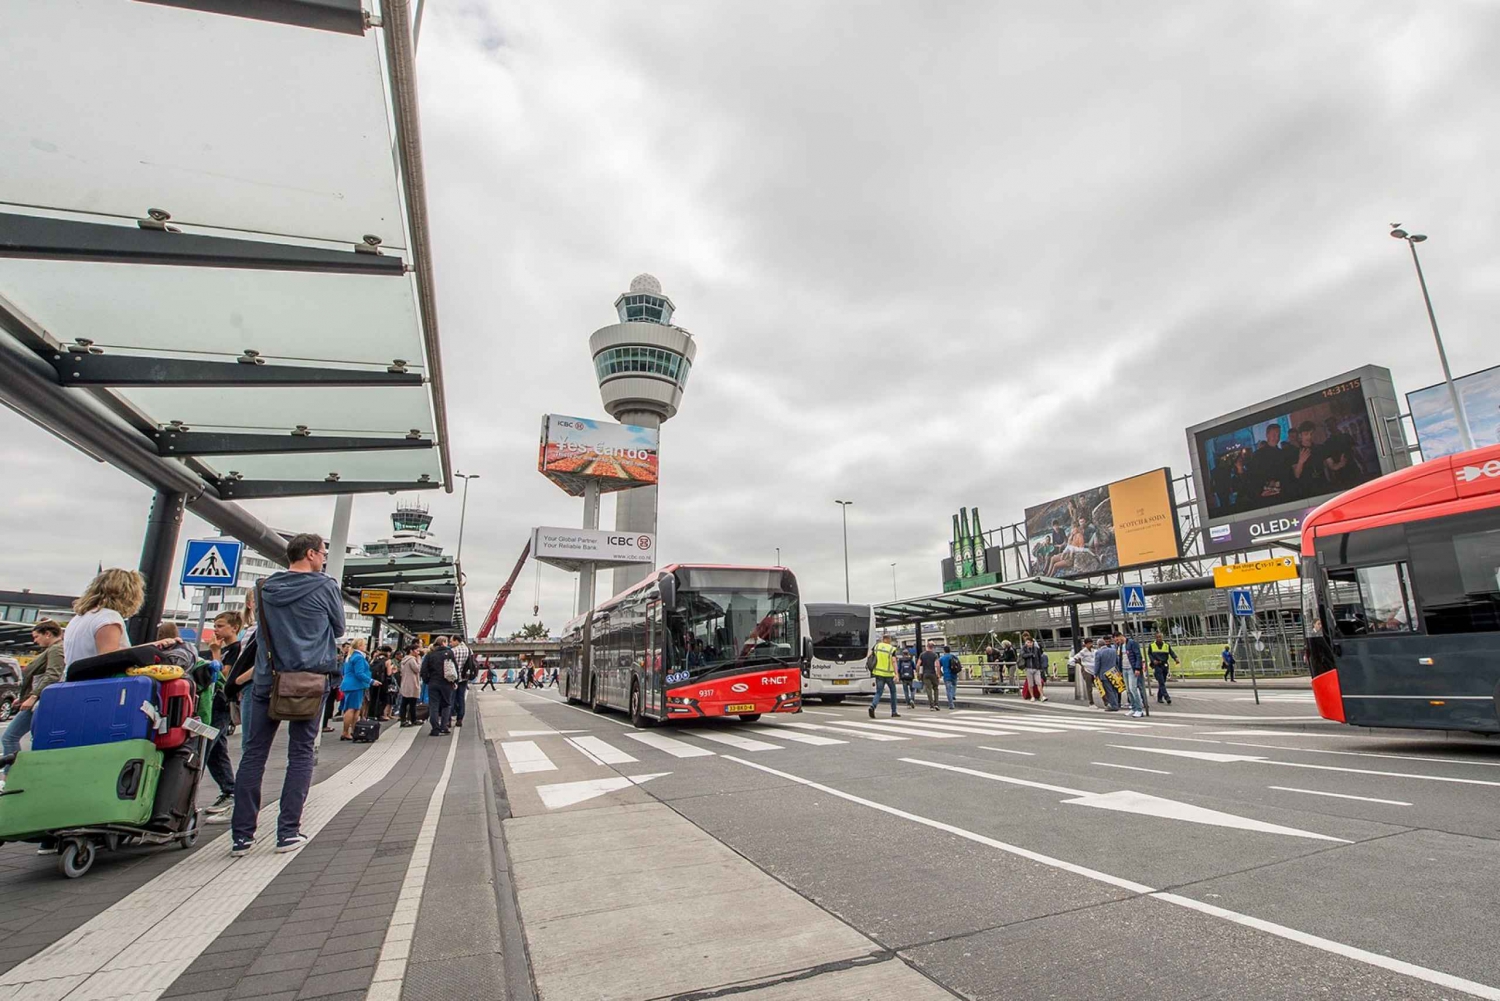 Haarlem : Transfert en bus express de l'aéroport vers le centre ville